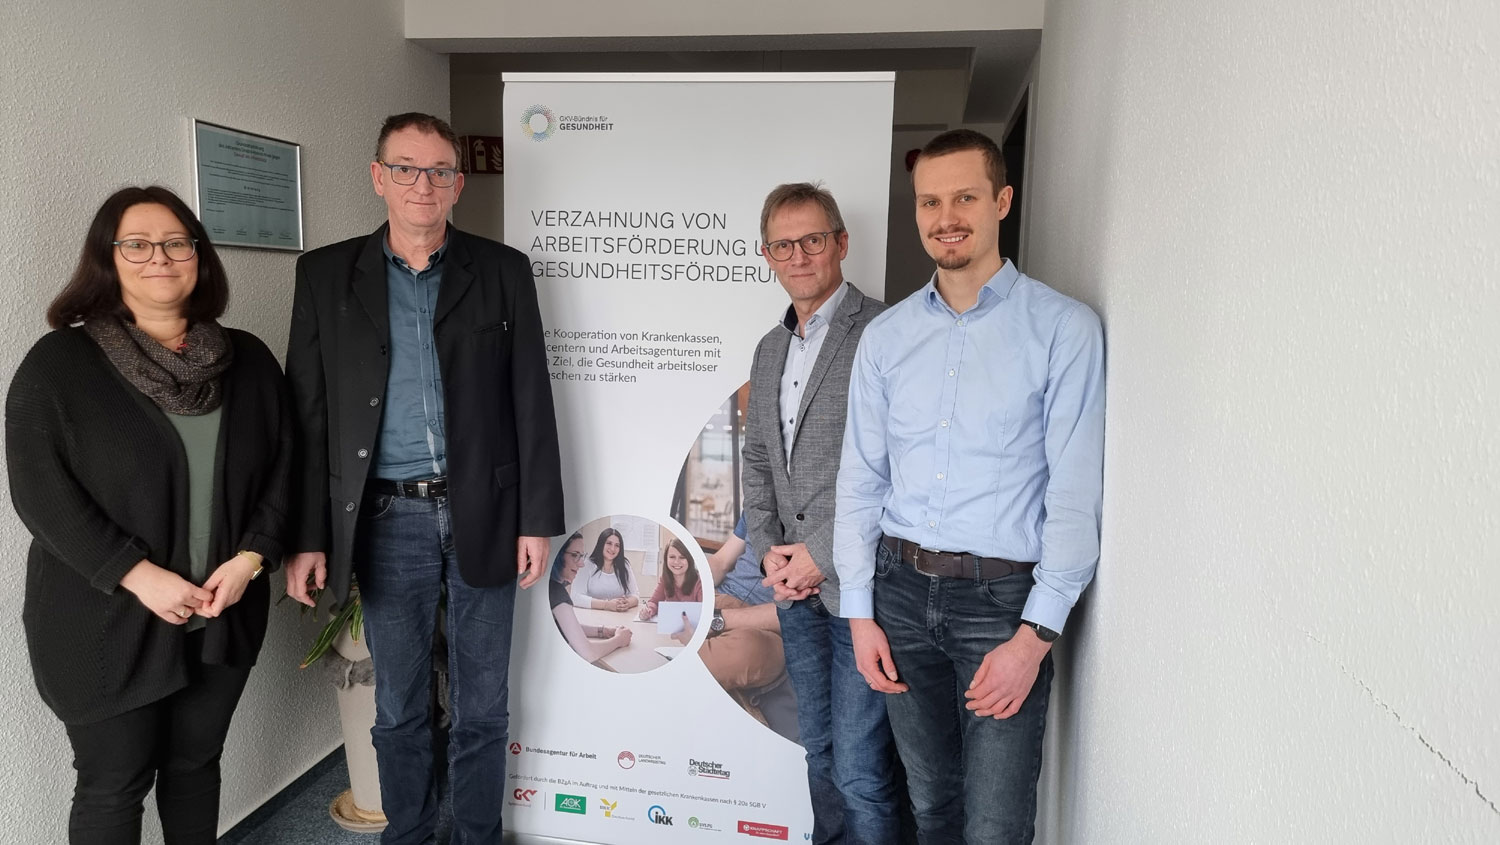 Doreen Deutsch (JC UHK), Peter Gundermann (JC UHK), Thomas Fabisch (AOK Plus) und Markus Kirchner (AOK Plus)  koordinieren und begleiten das Programm im Unstrut-Hainich-Kreis.